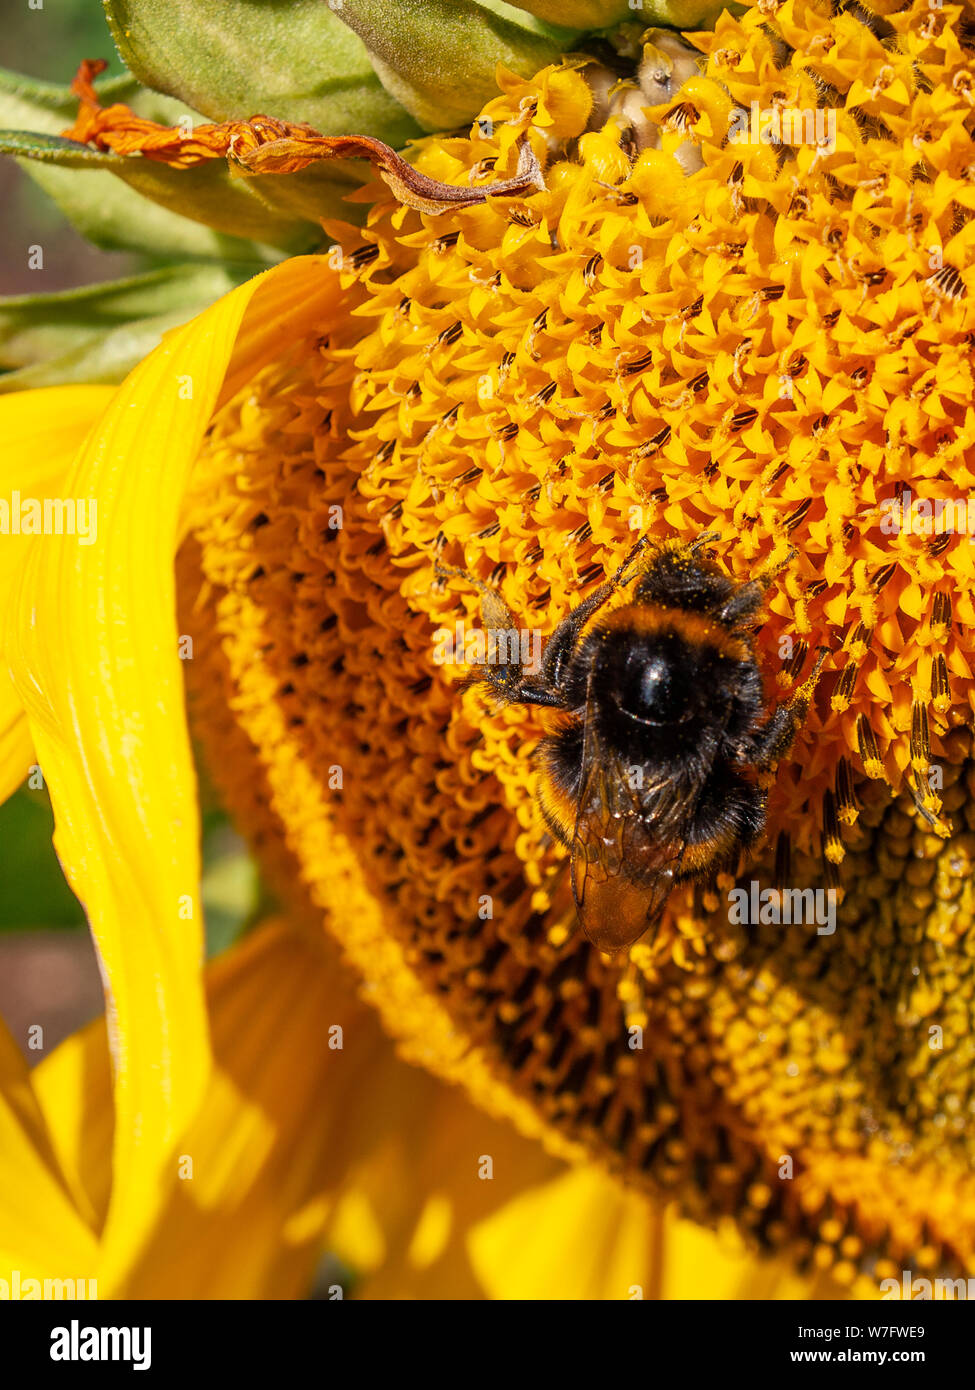 Une abeille couverts dans le pollen est occupé à recueillir le nectar et se nourrissant d'un tournesol dans un champ de tournesols à Rhossili en août 2019. Gower, Pays de Galles, Royaume-Uni. Banque D'Images